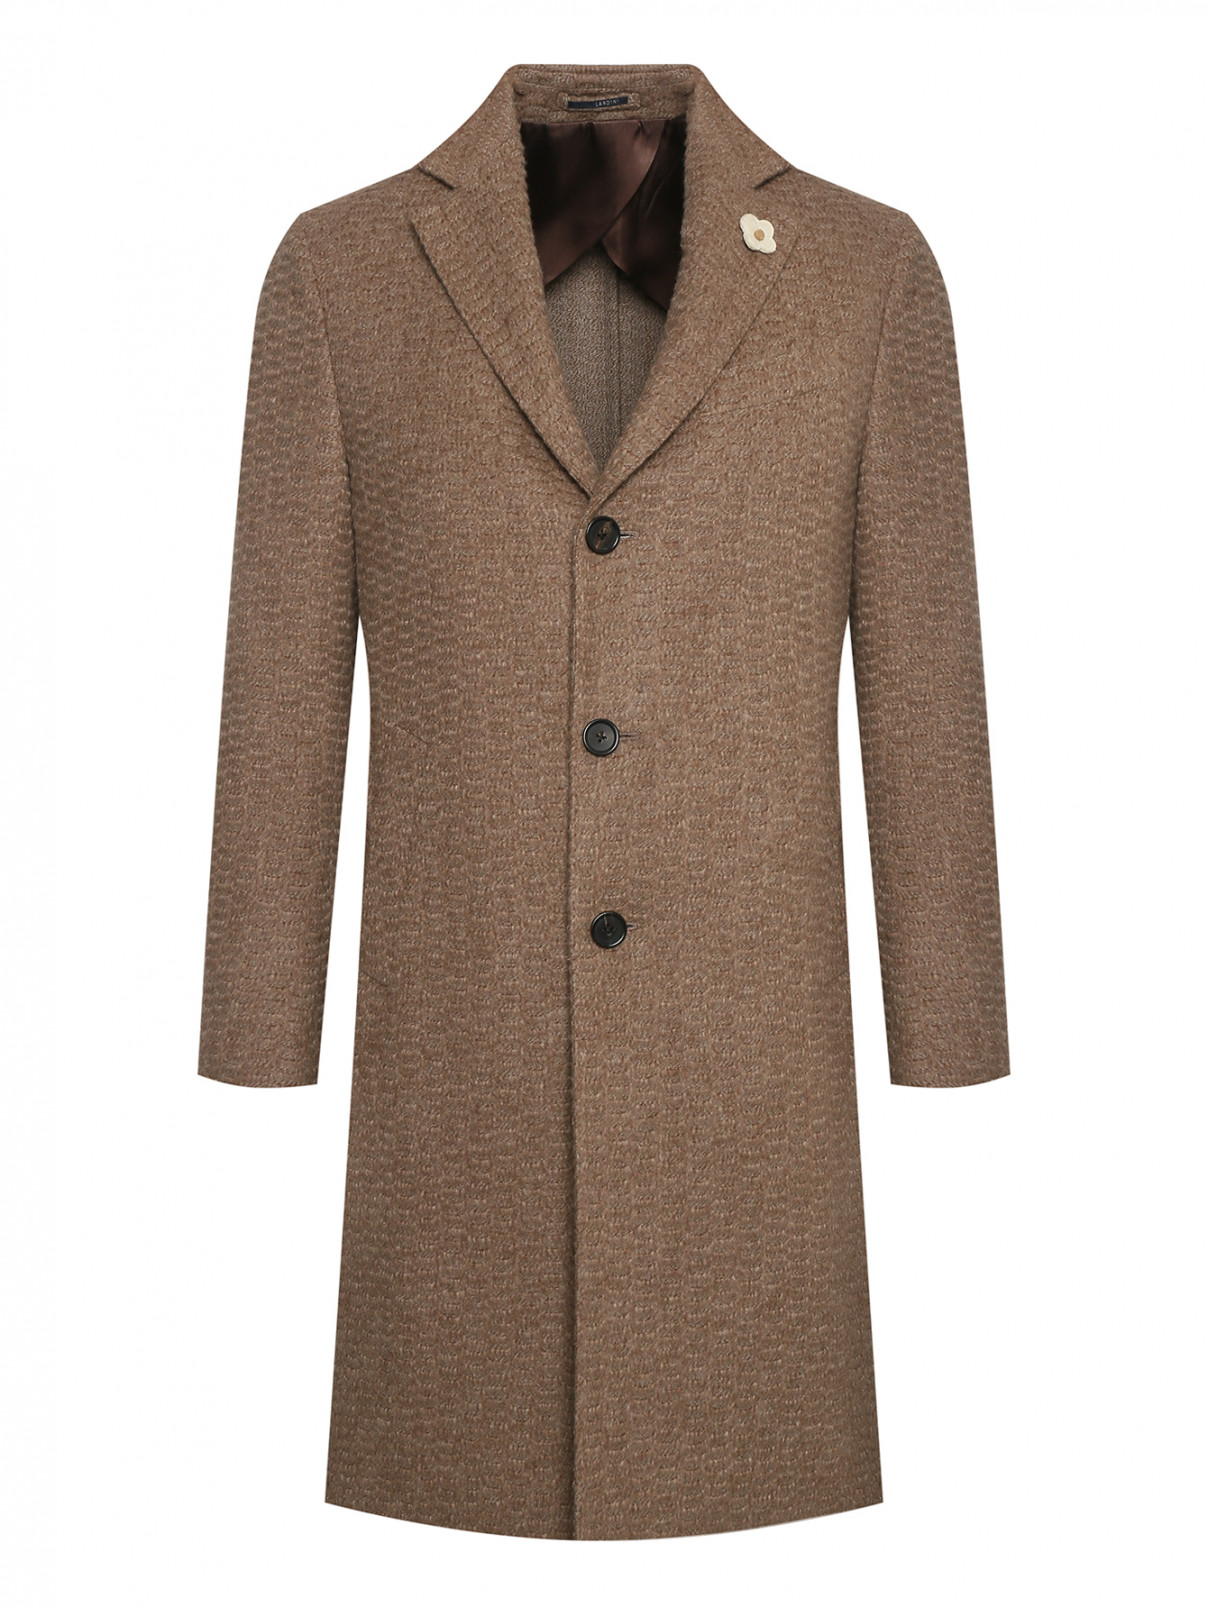 Однобортное пальто из кашемира и шерсти LARDINI  –  Общий вид  – Цвет:  Коричневый